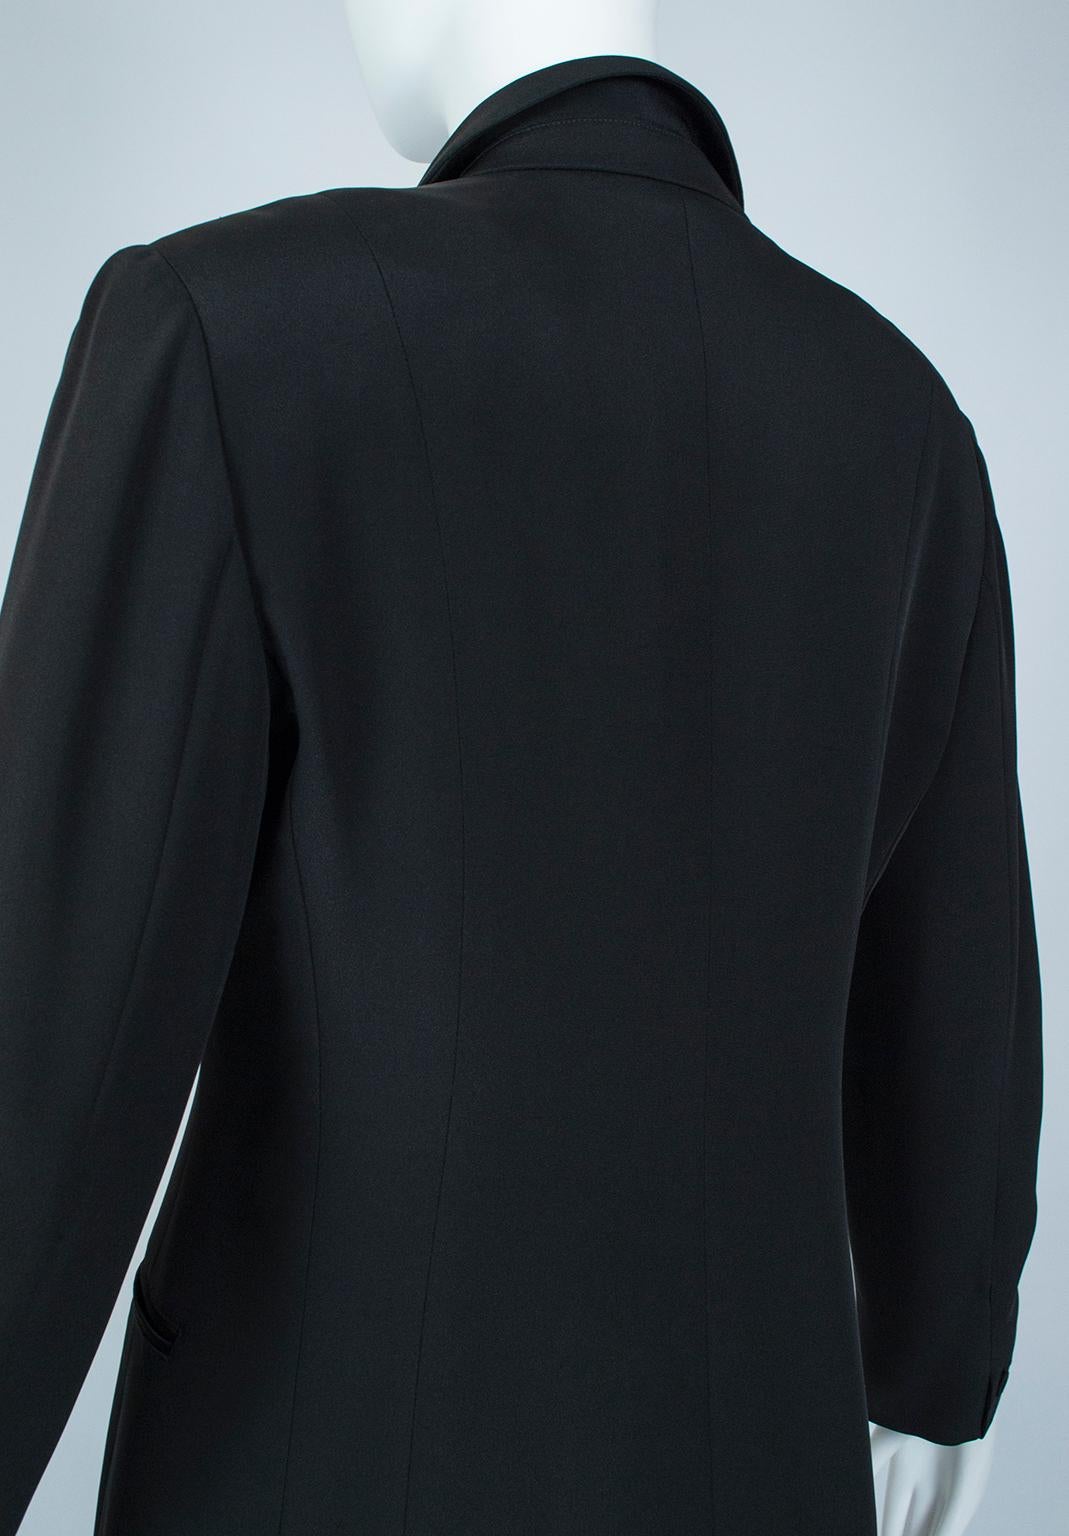 Giorgio Armani Black Silk Faille “Le Smoking” Tuxedo Blazer Jacket - It 42, 2001 For Sale 3